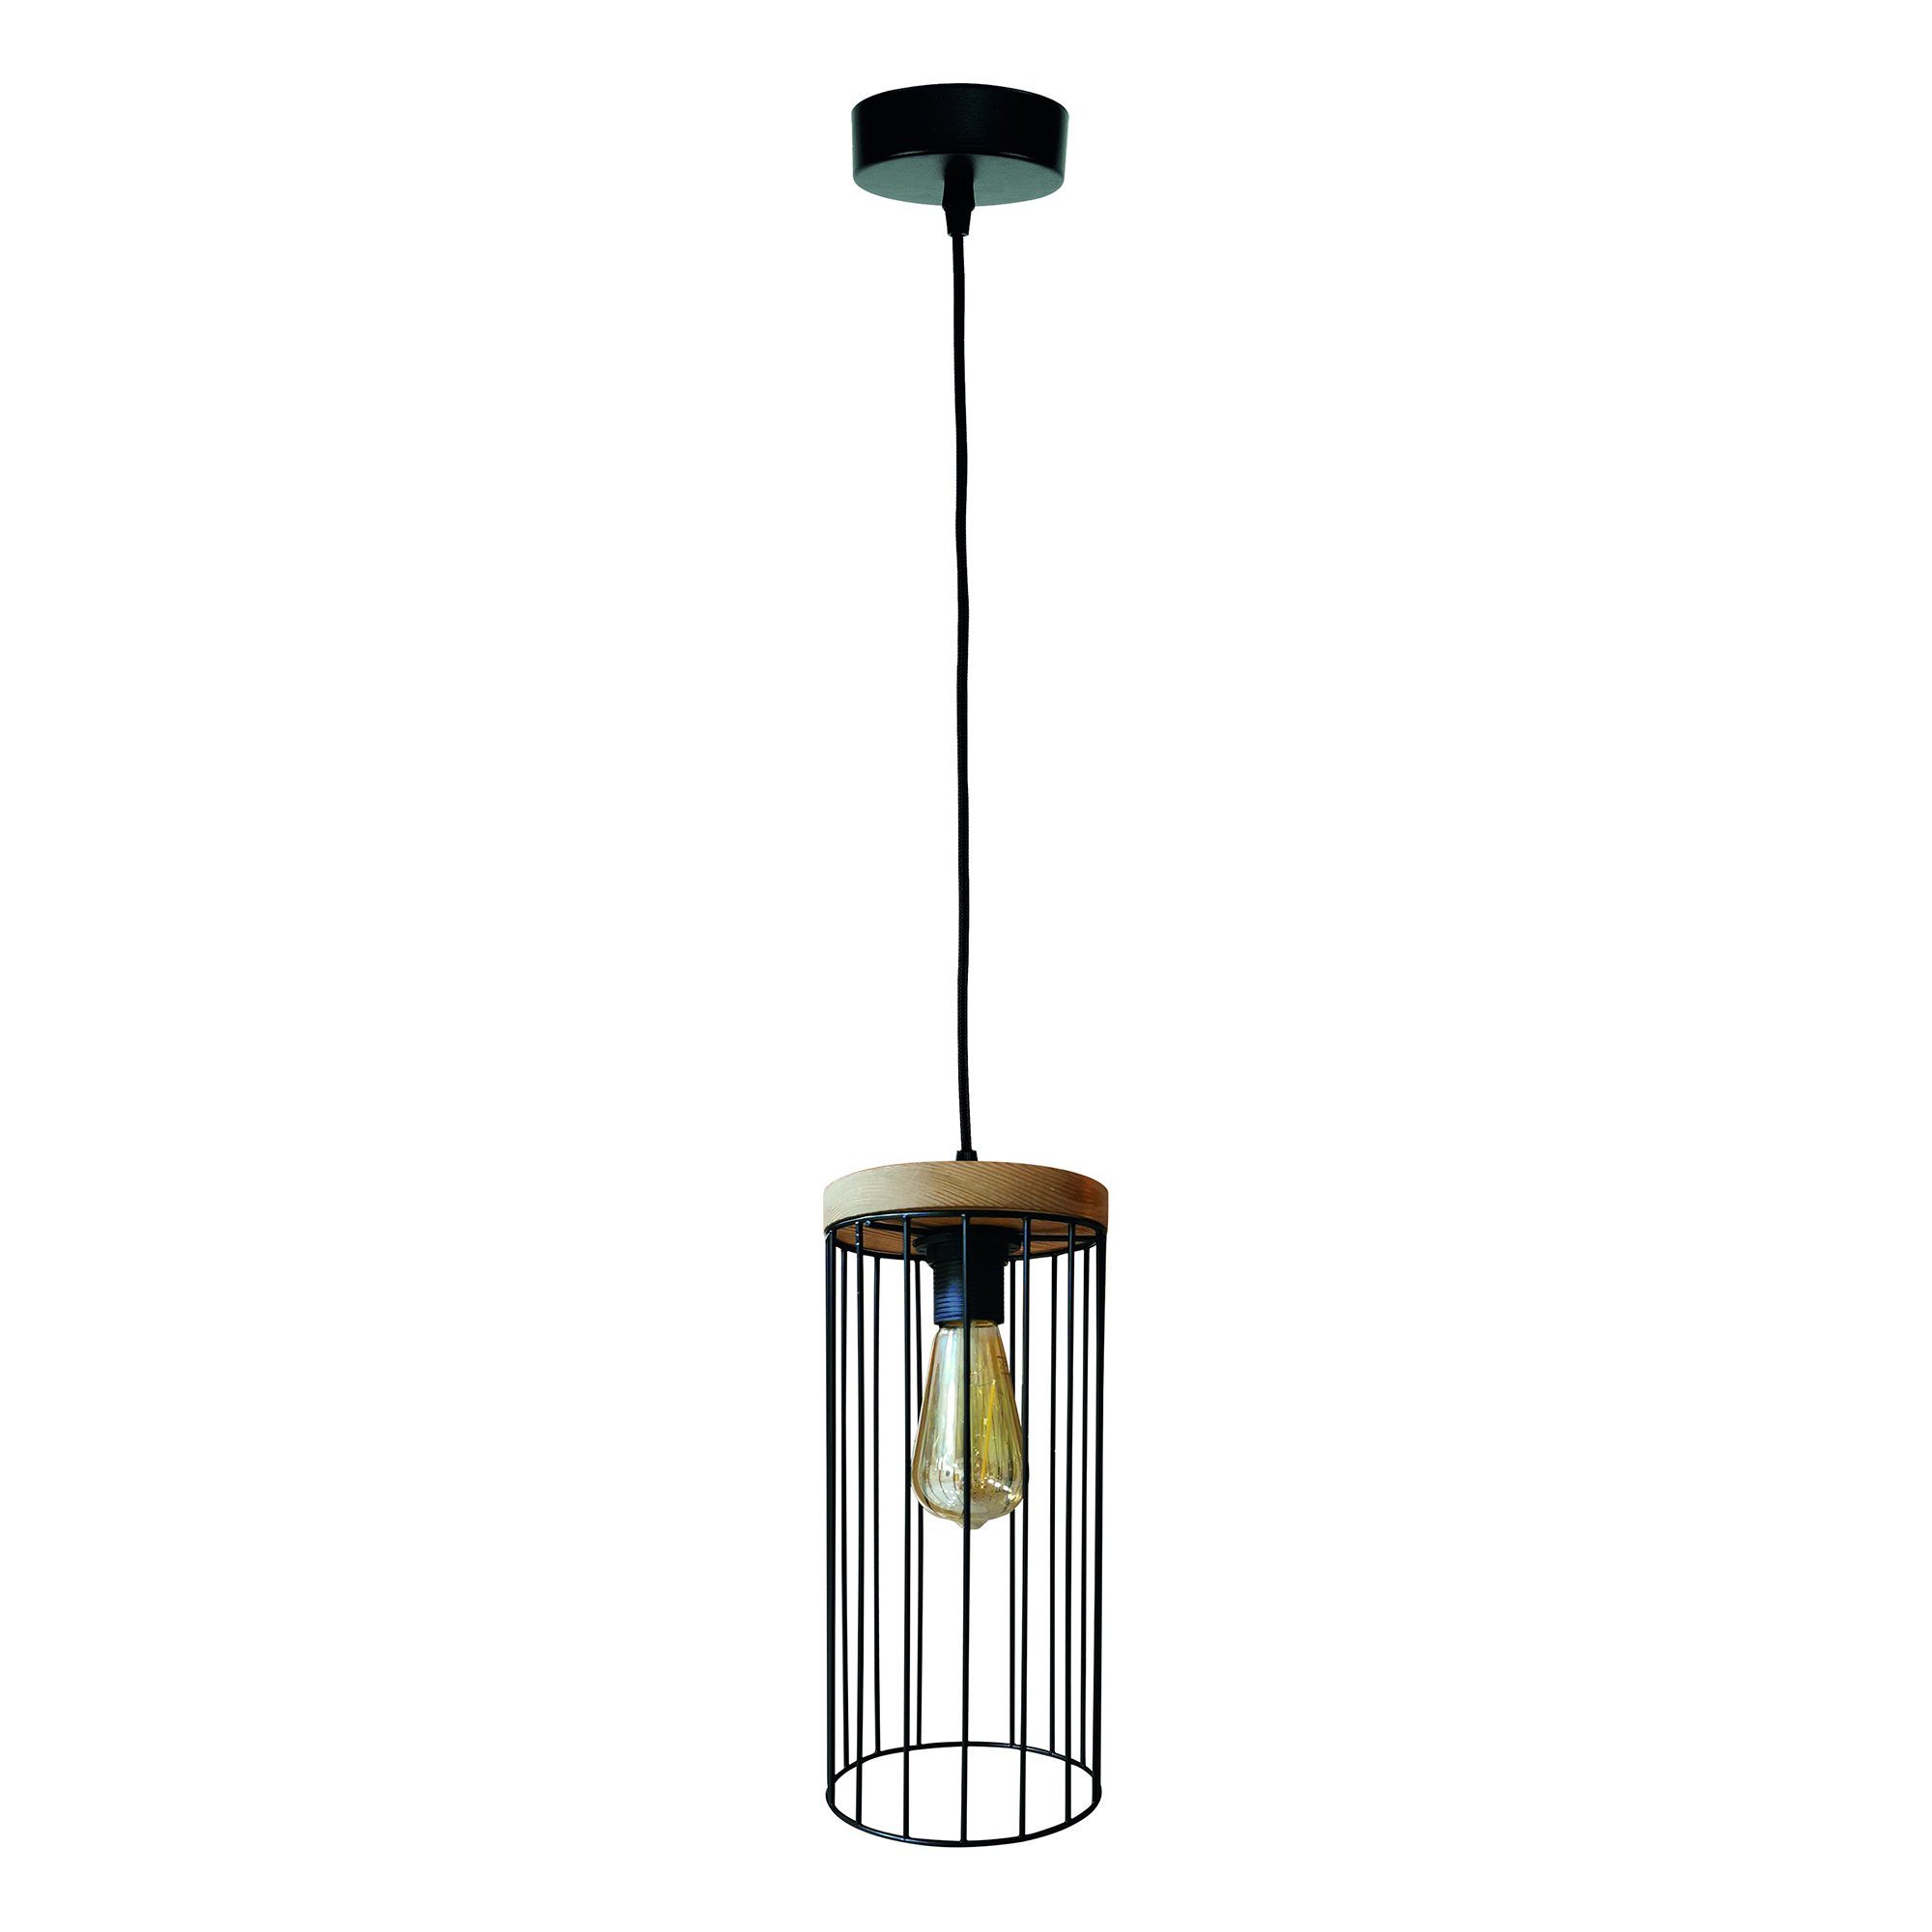 britop lighting hanglamp timeo wood max hanglamp, trendy kap van metaal, met eikenhout zwart